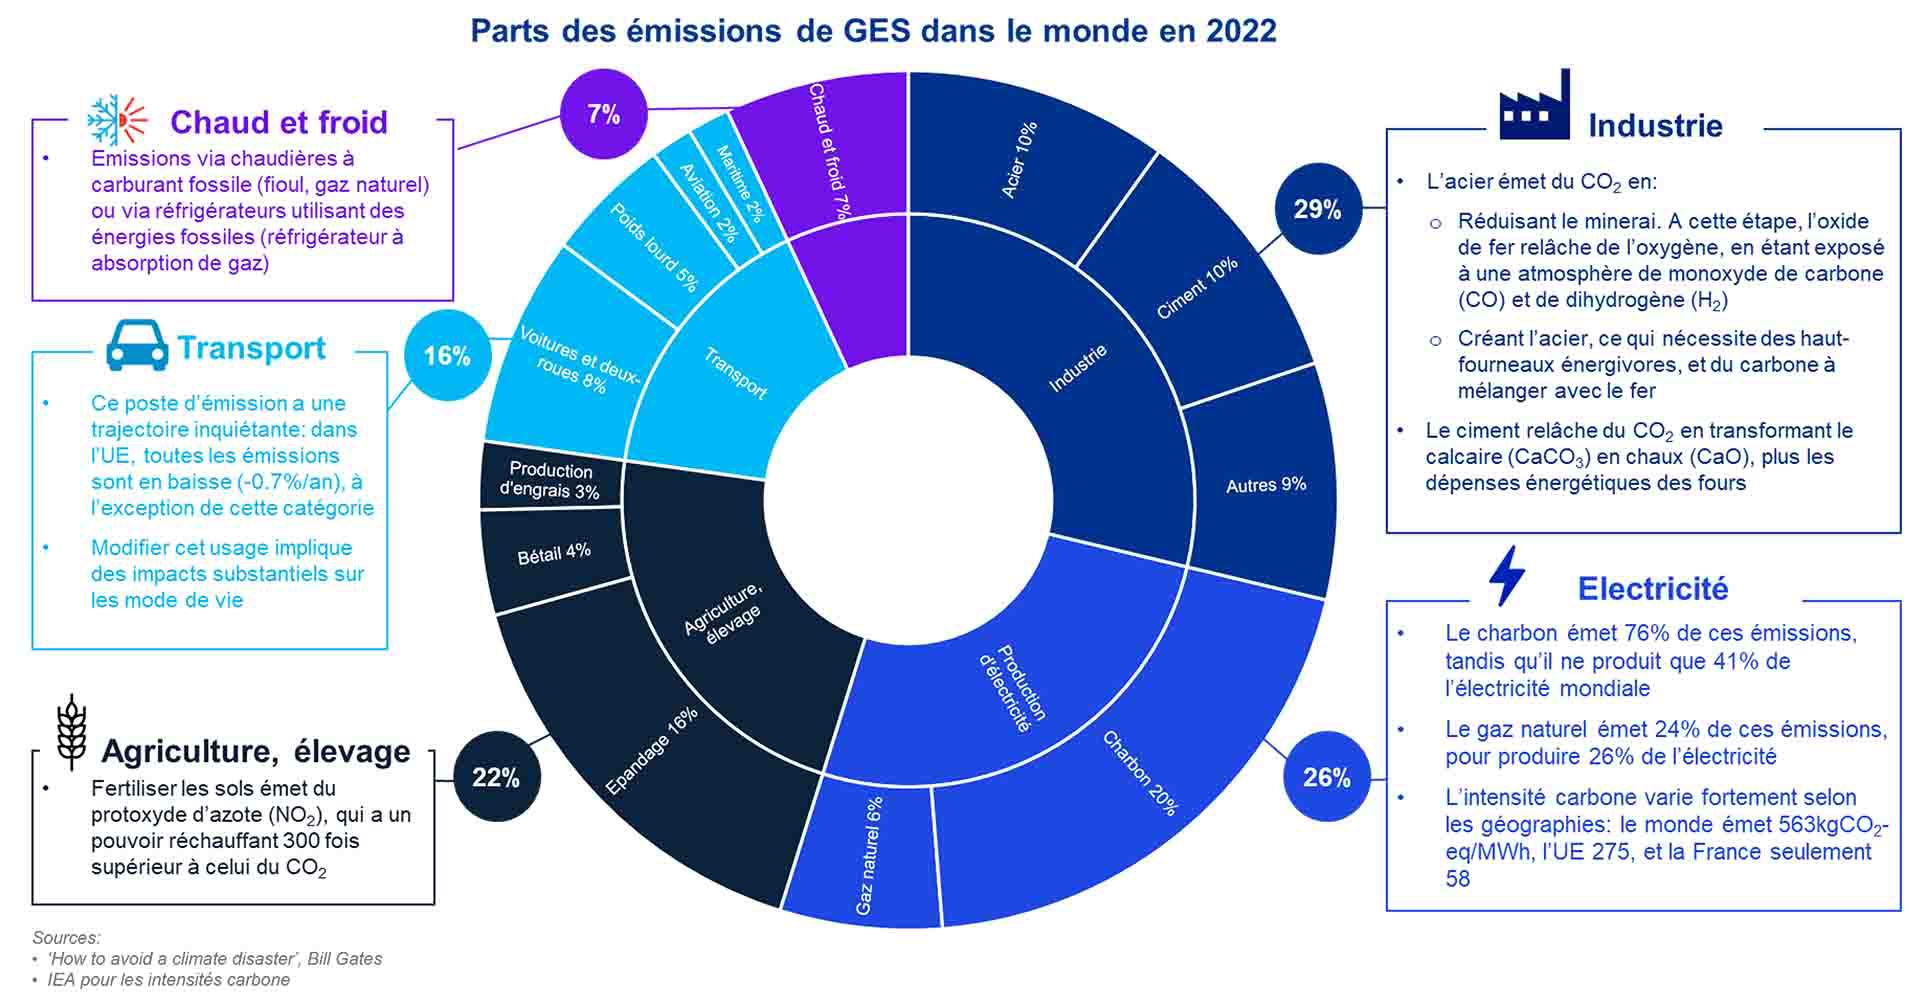 Parts des émissions de GES dans le monde, 2022